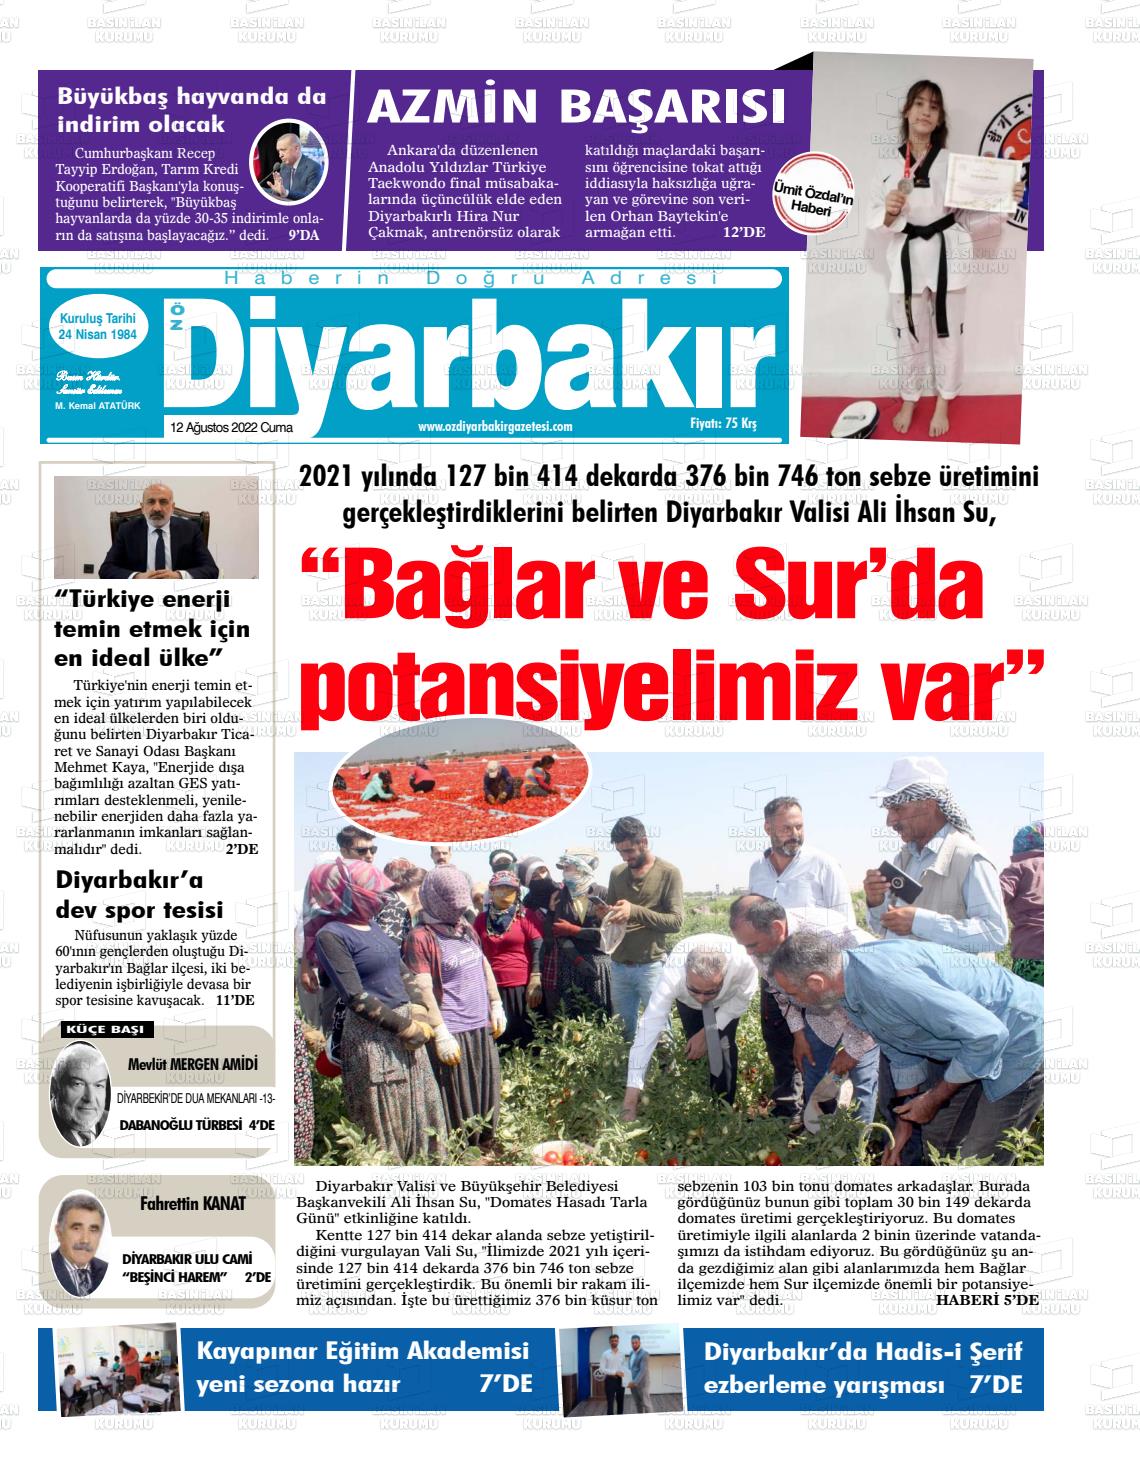 12 Ağustos 2022 Öz Diyarbakir Gazete Gazete Manşeti